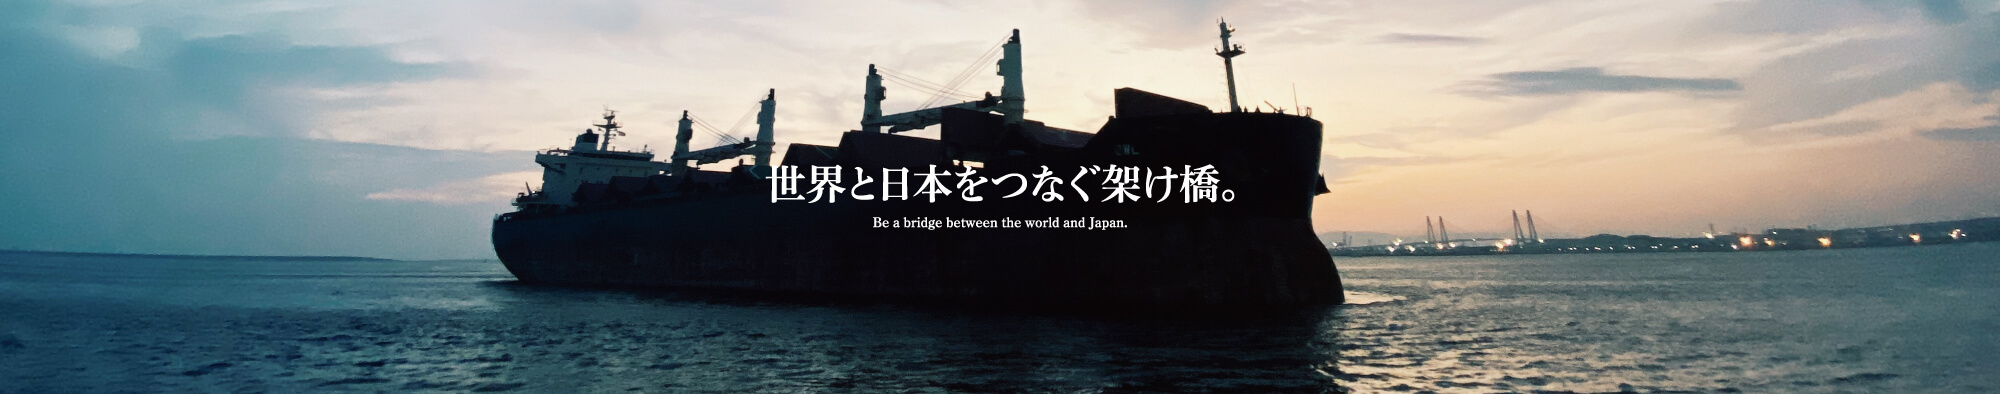 世界と日本をつなぐ架け橋